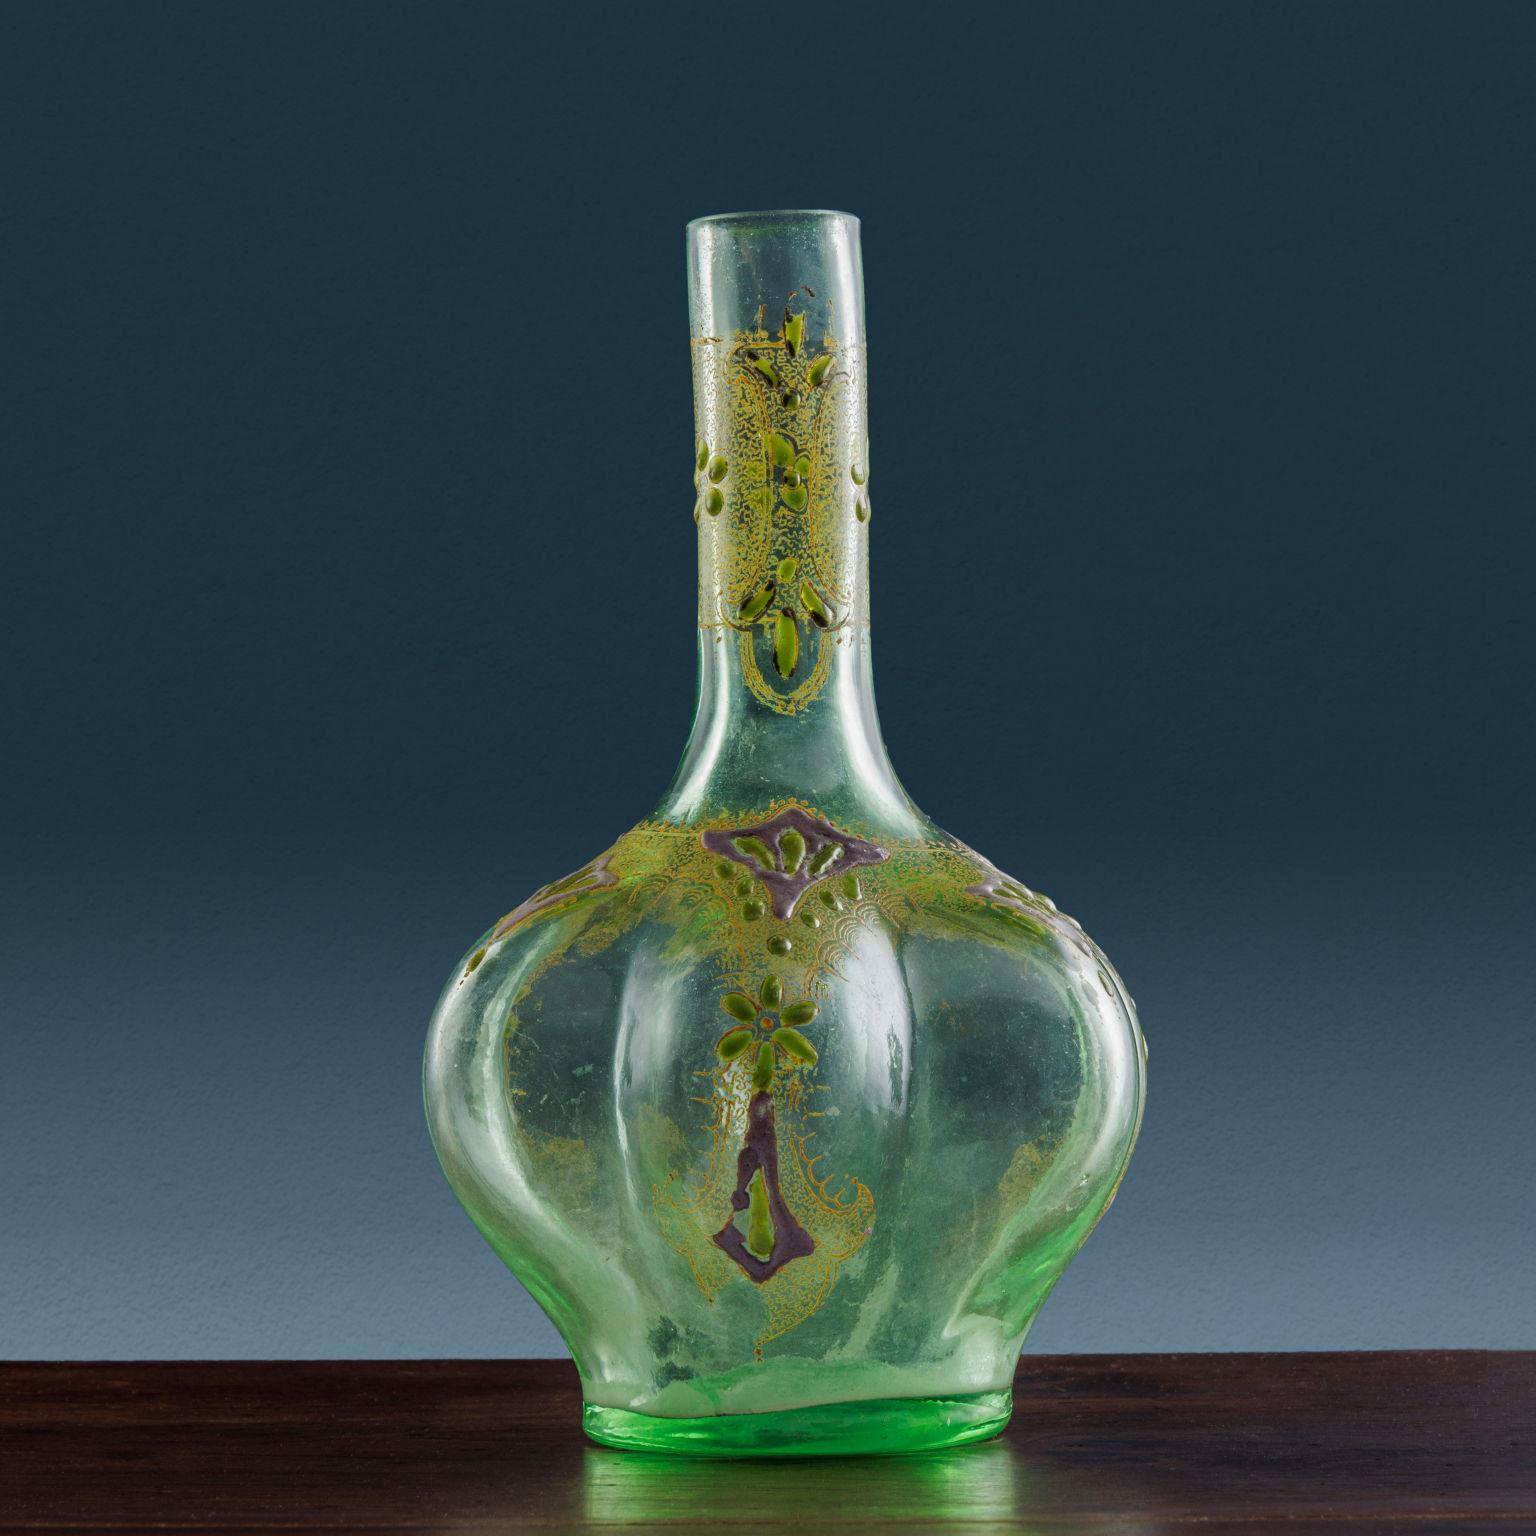 Grüne mundgeblasene Glasvase mit bauchigen Elementen in der Modellierung des Körpers, verziert mit grüner, silberner und goldener Emaillierung sowohl auf dem Körper als auch auf dem Hals der Vase. Die Emaillen zeigen florale Motive, die von